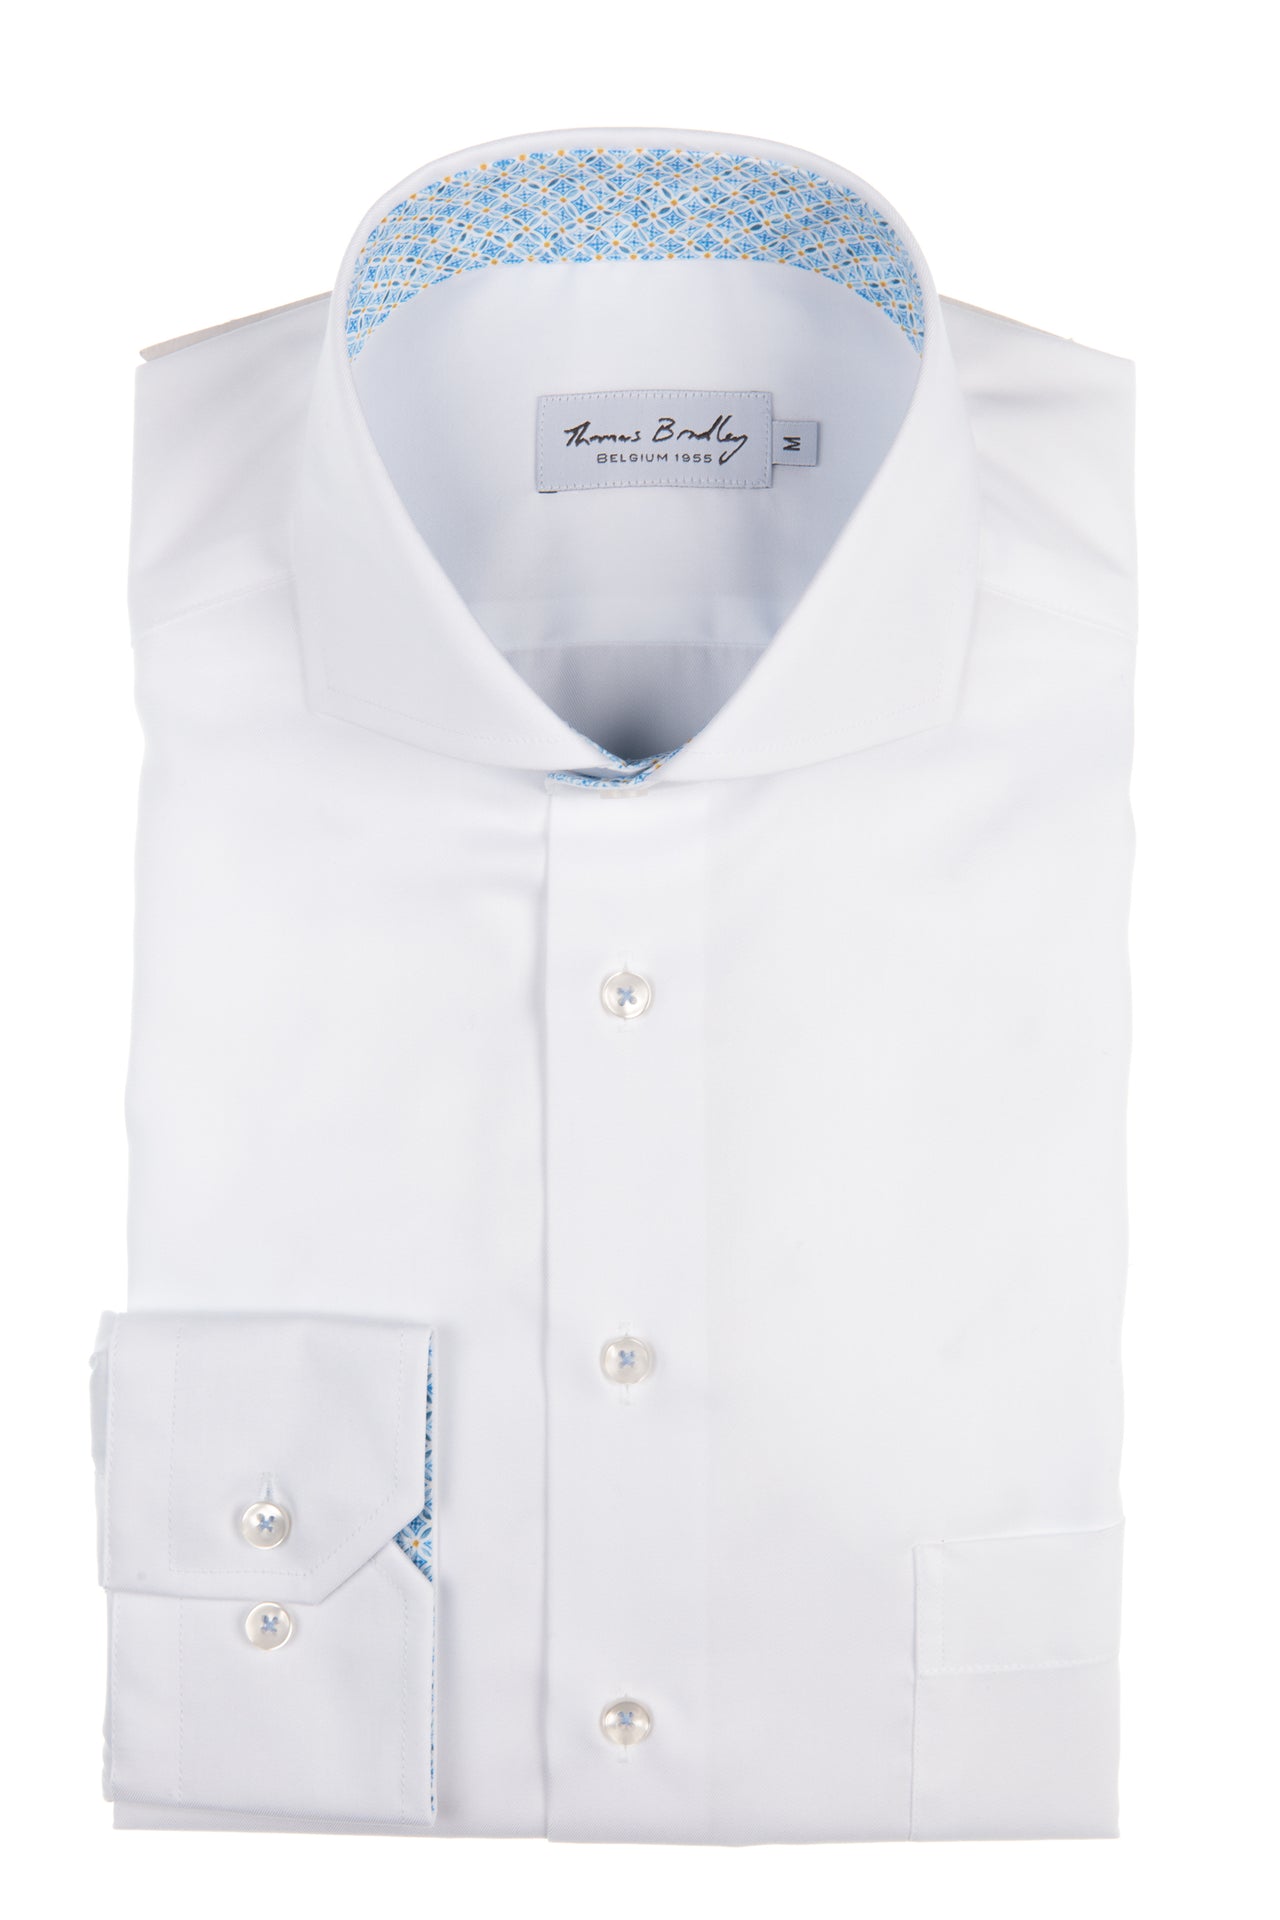 Wit hemd met blauwe raster print